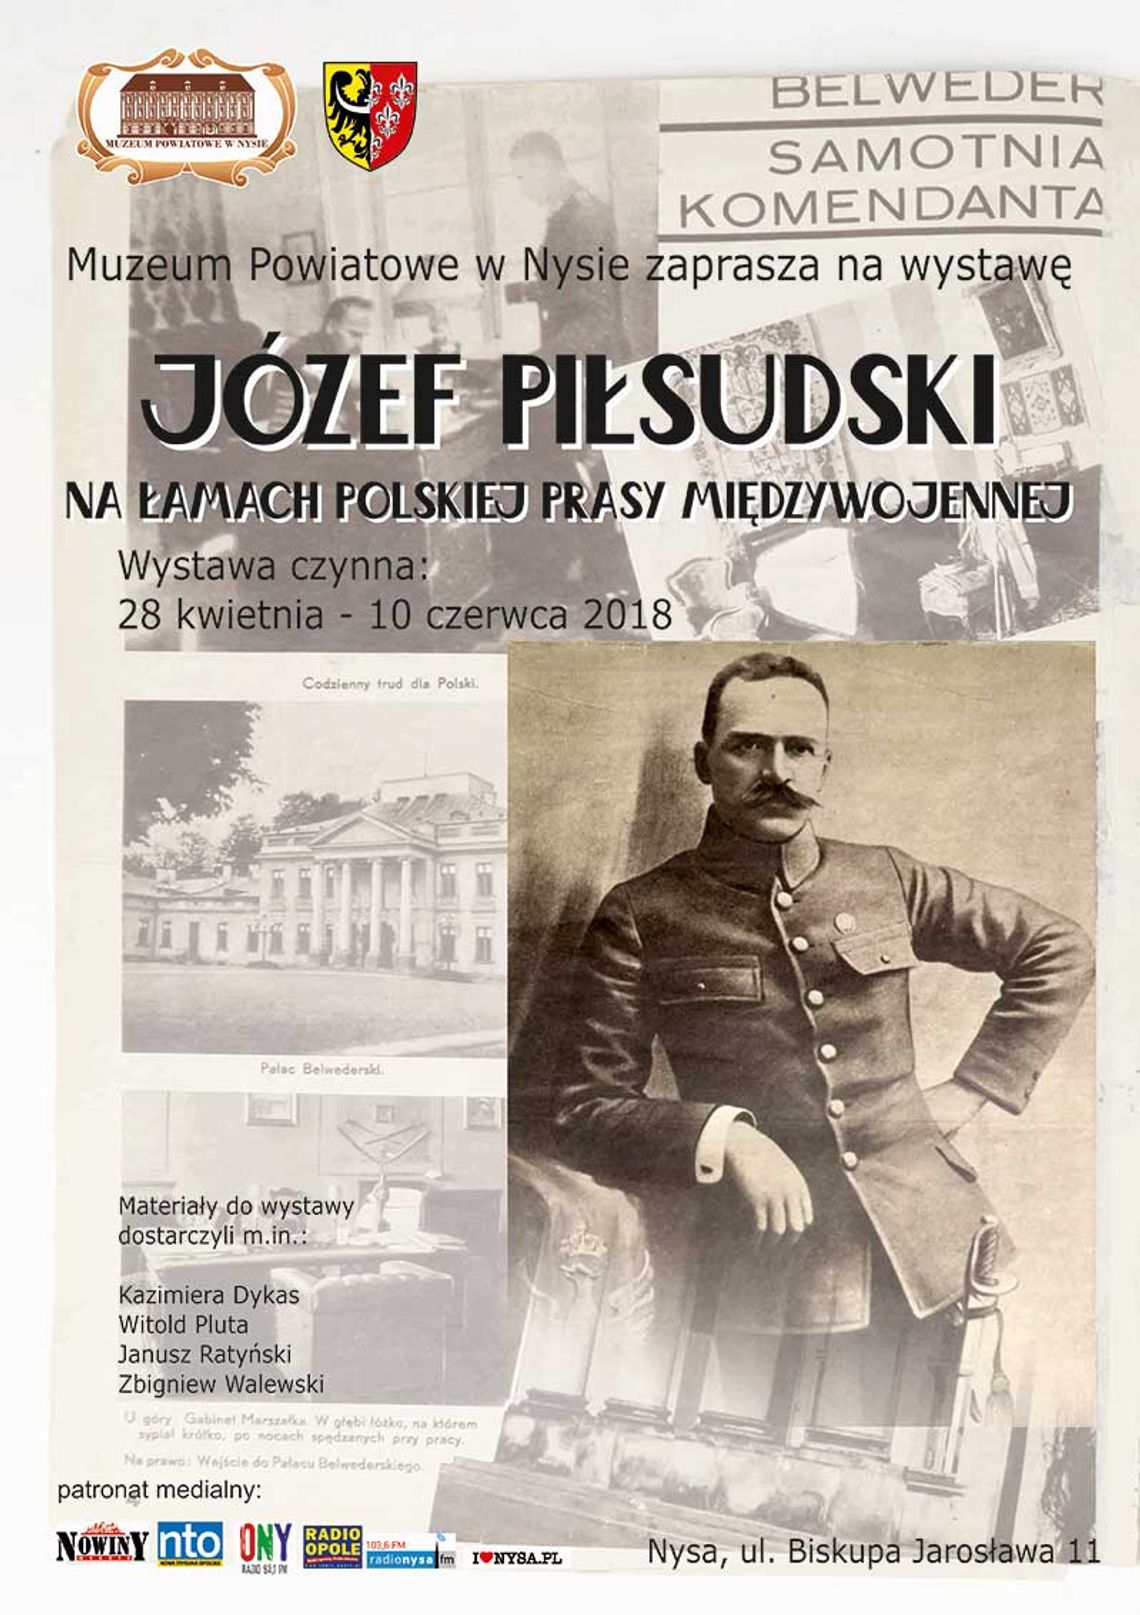 Józef Piłsudski na łamach polskiej prasy międzywojennej - Wystawa